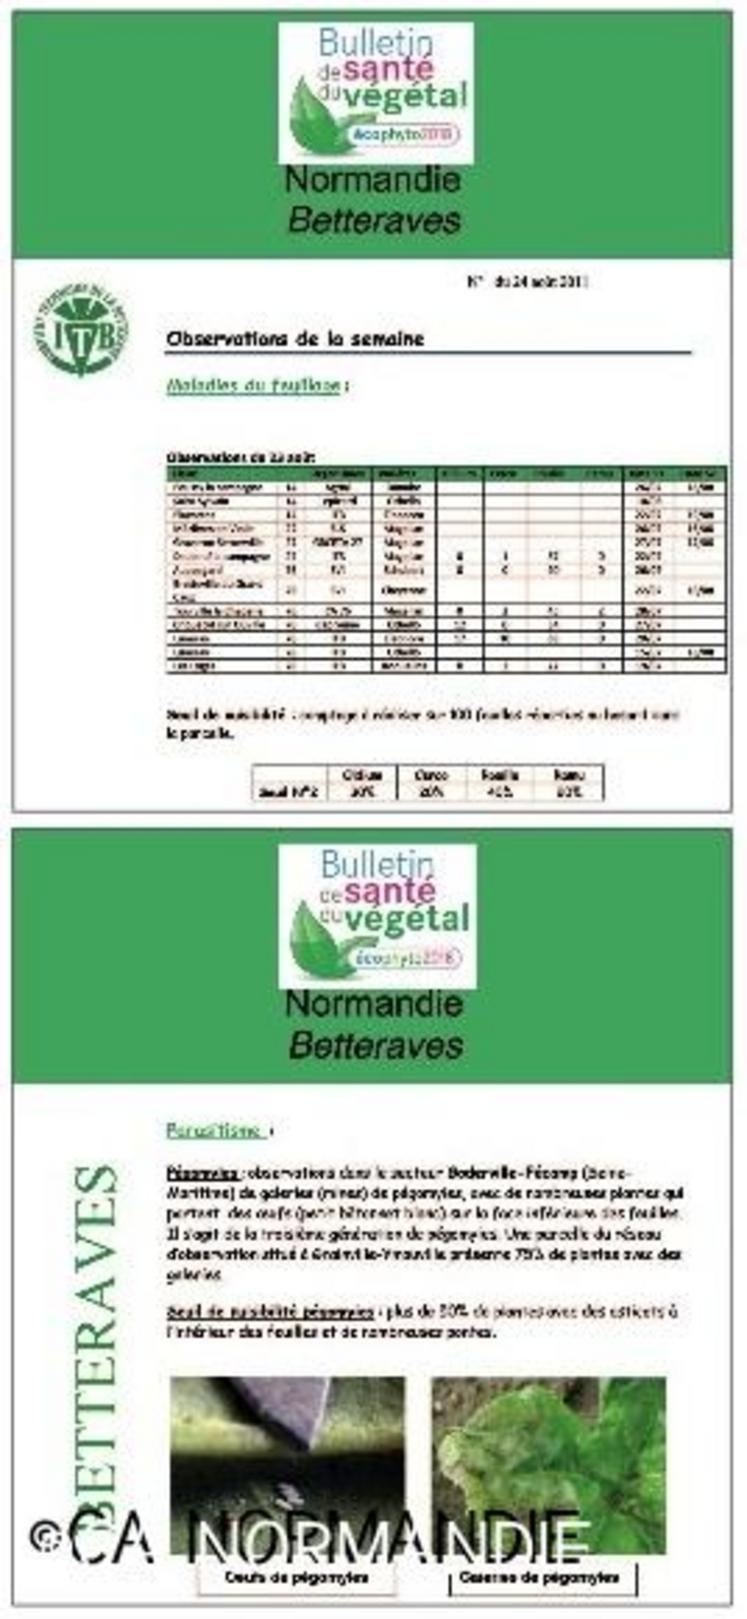 Pour exemple, le Bulletin de Santé du Végétal (BSV) Normandie betteraves.